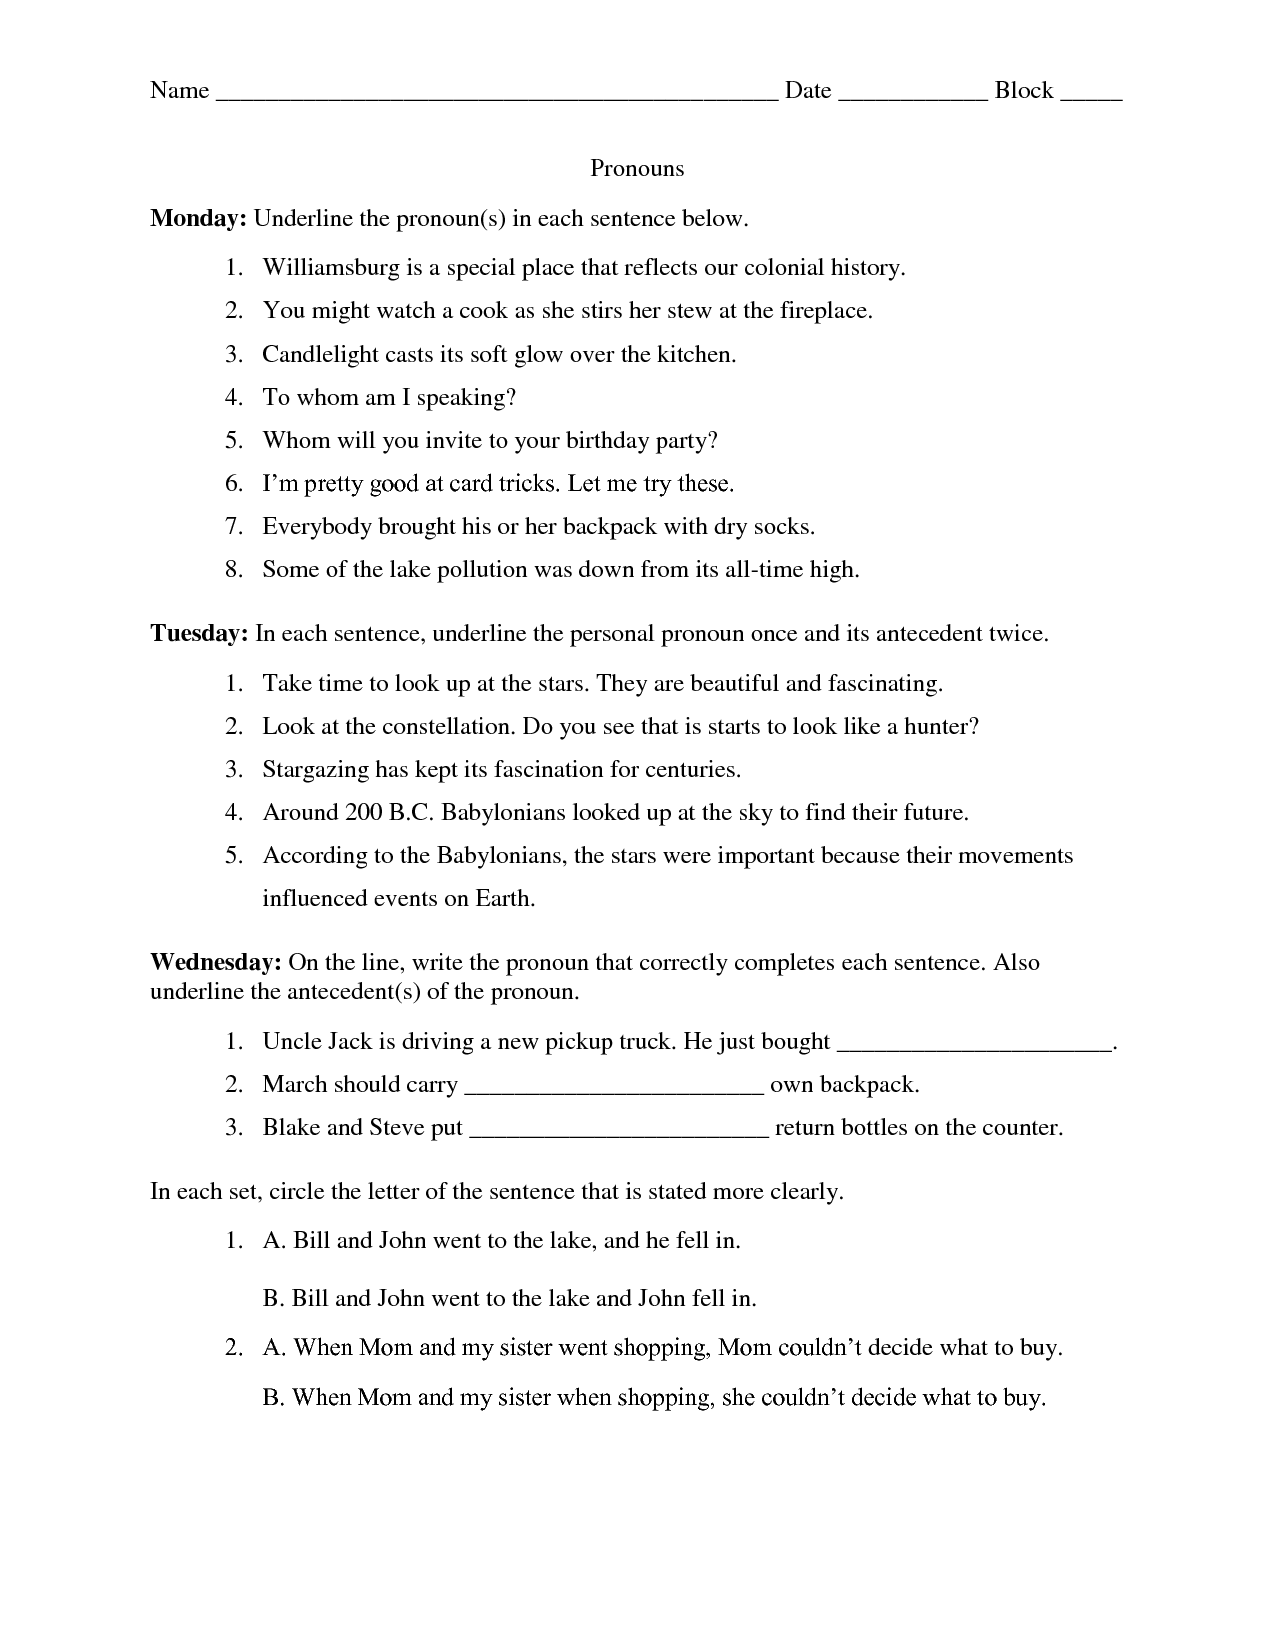 15 Best Images Of Antecedent Worksheet Middle School Pronoun Worksheets Middle School Pronoun